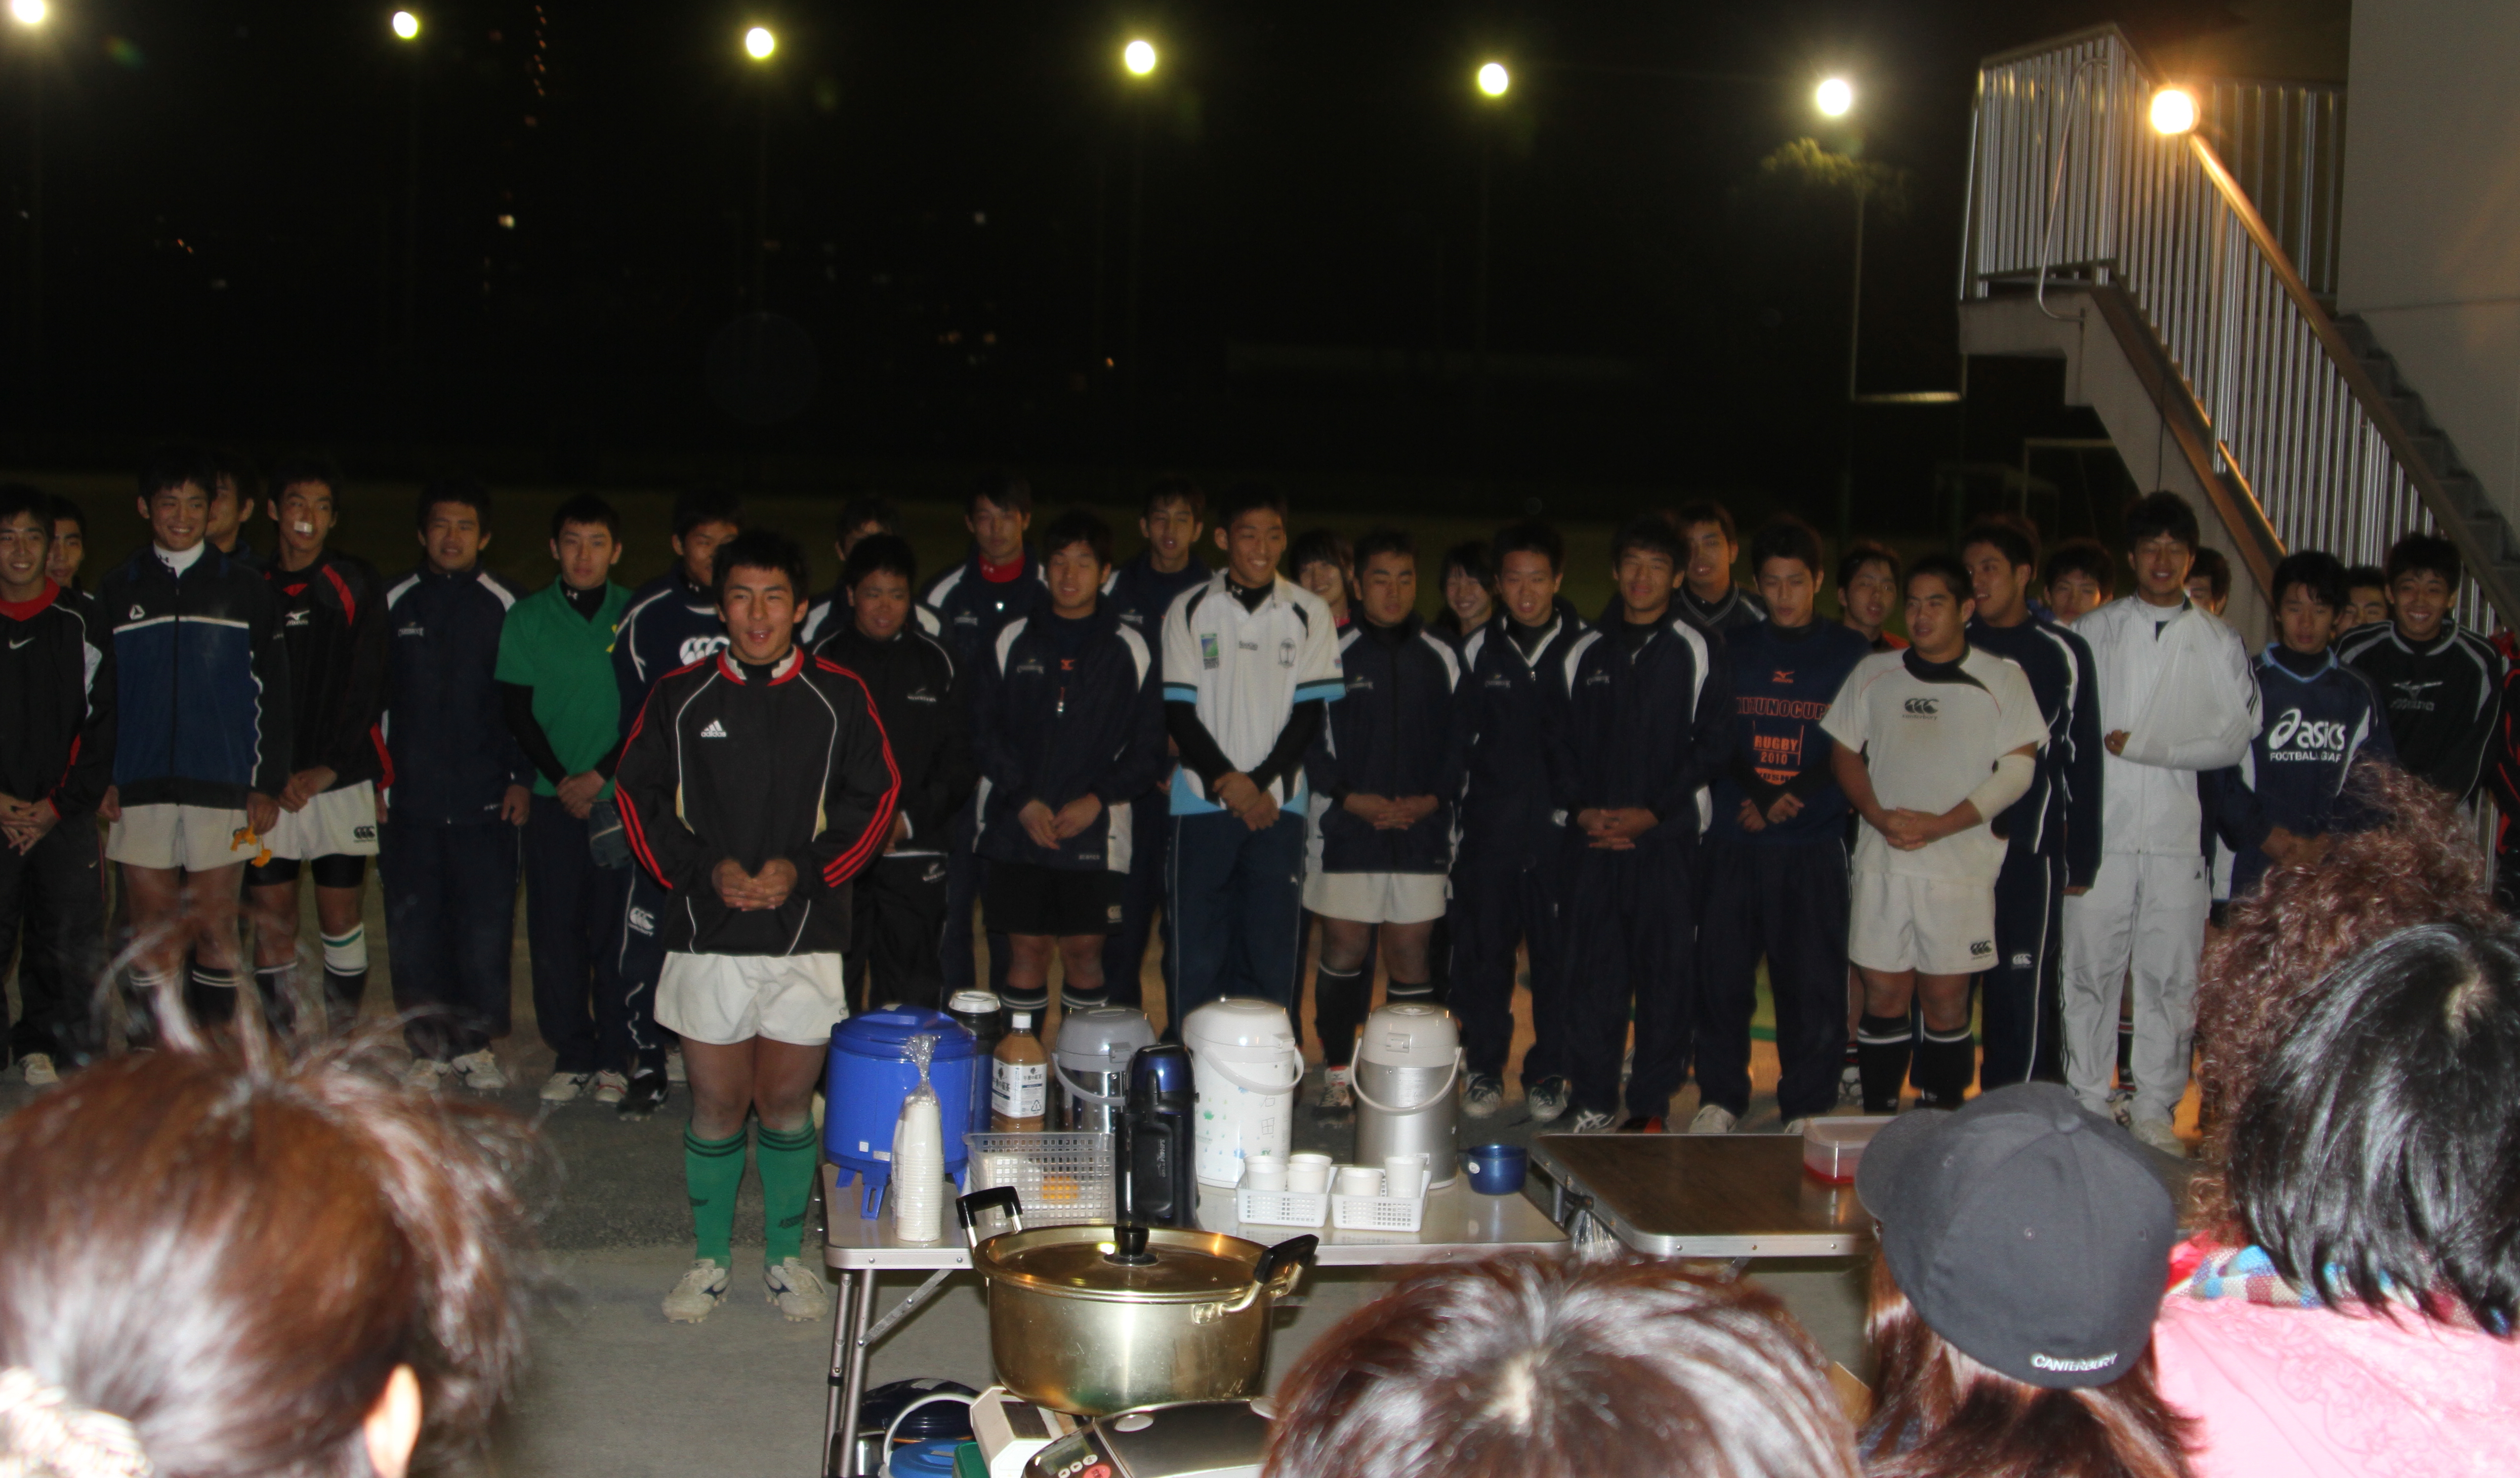 http://kokura-rugby.sakura.ne.jp/2010.10.28-A.JPG